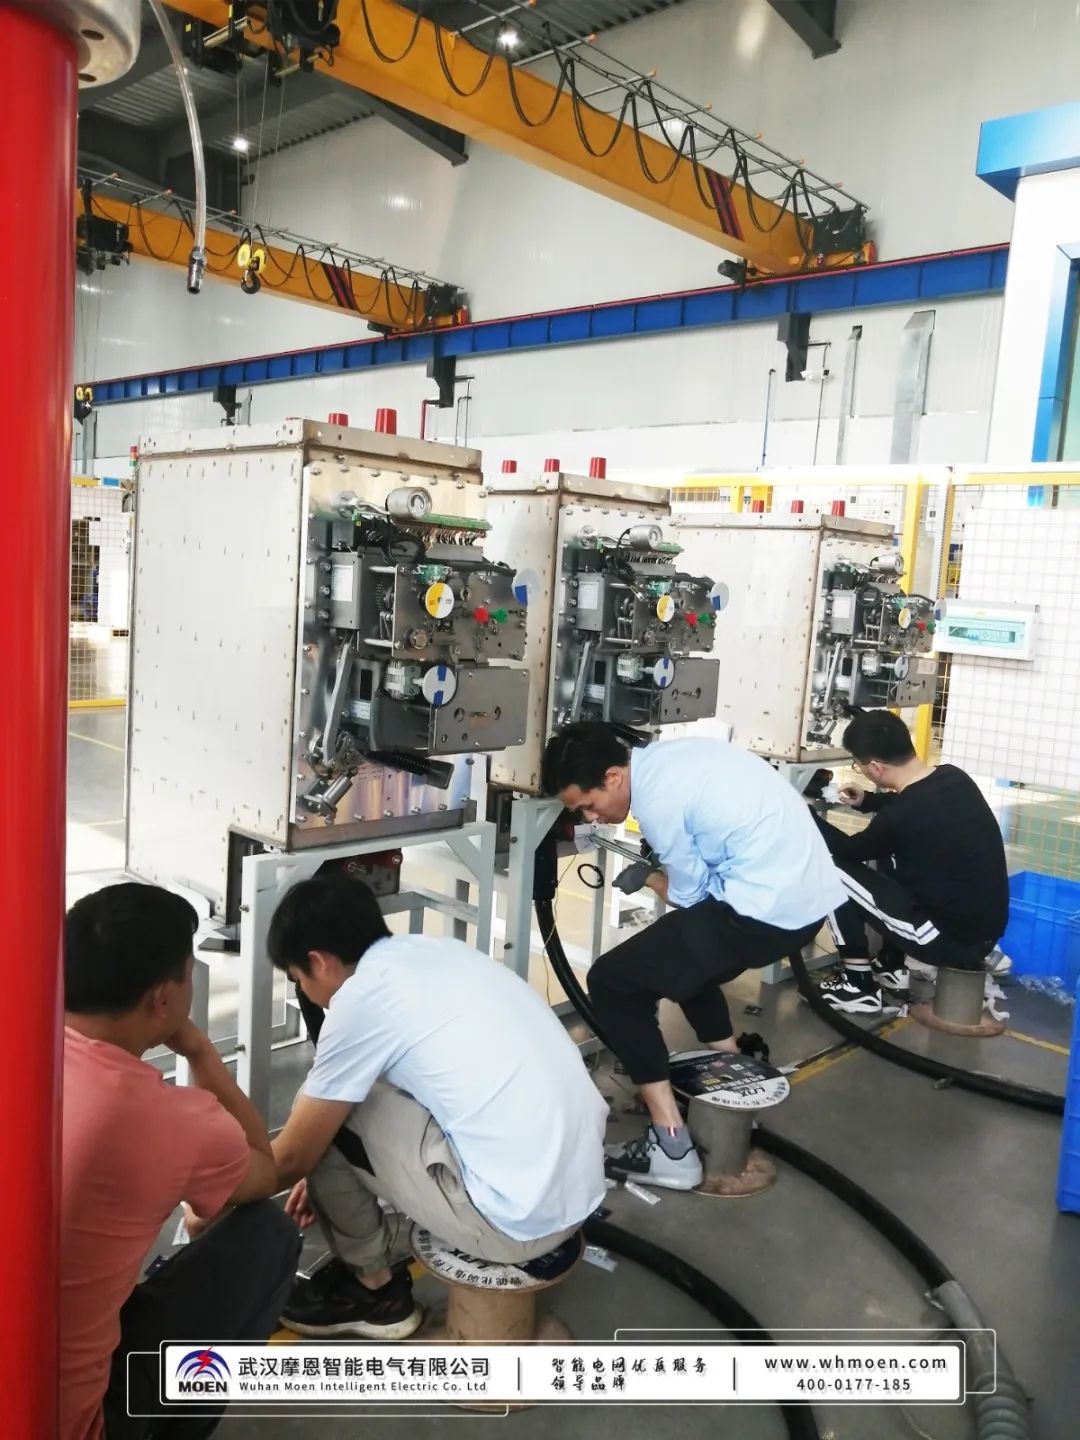 武汉摩恩为广东客户提供冲击电压发生器调试服务(图4)